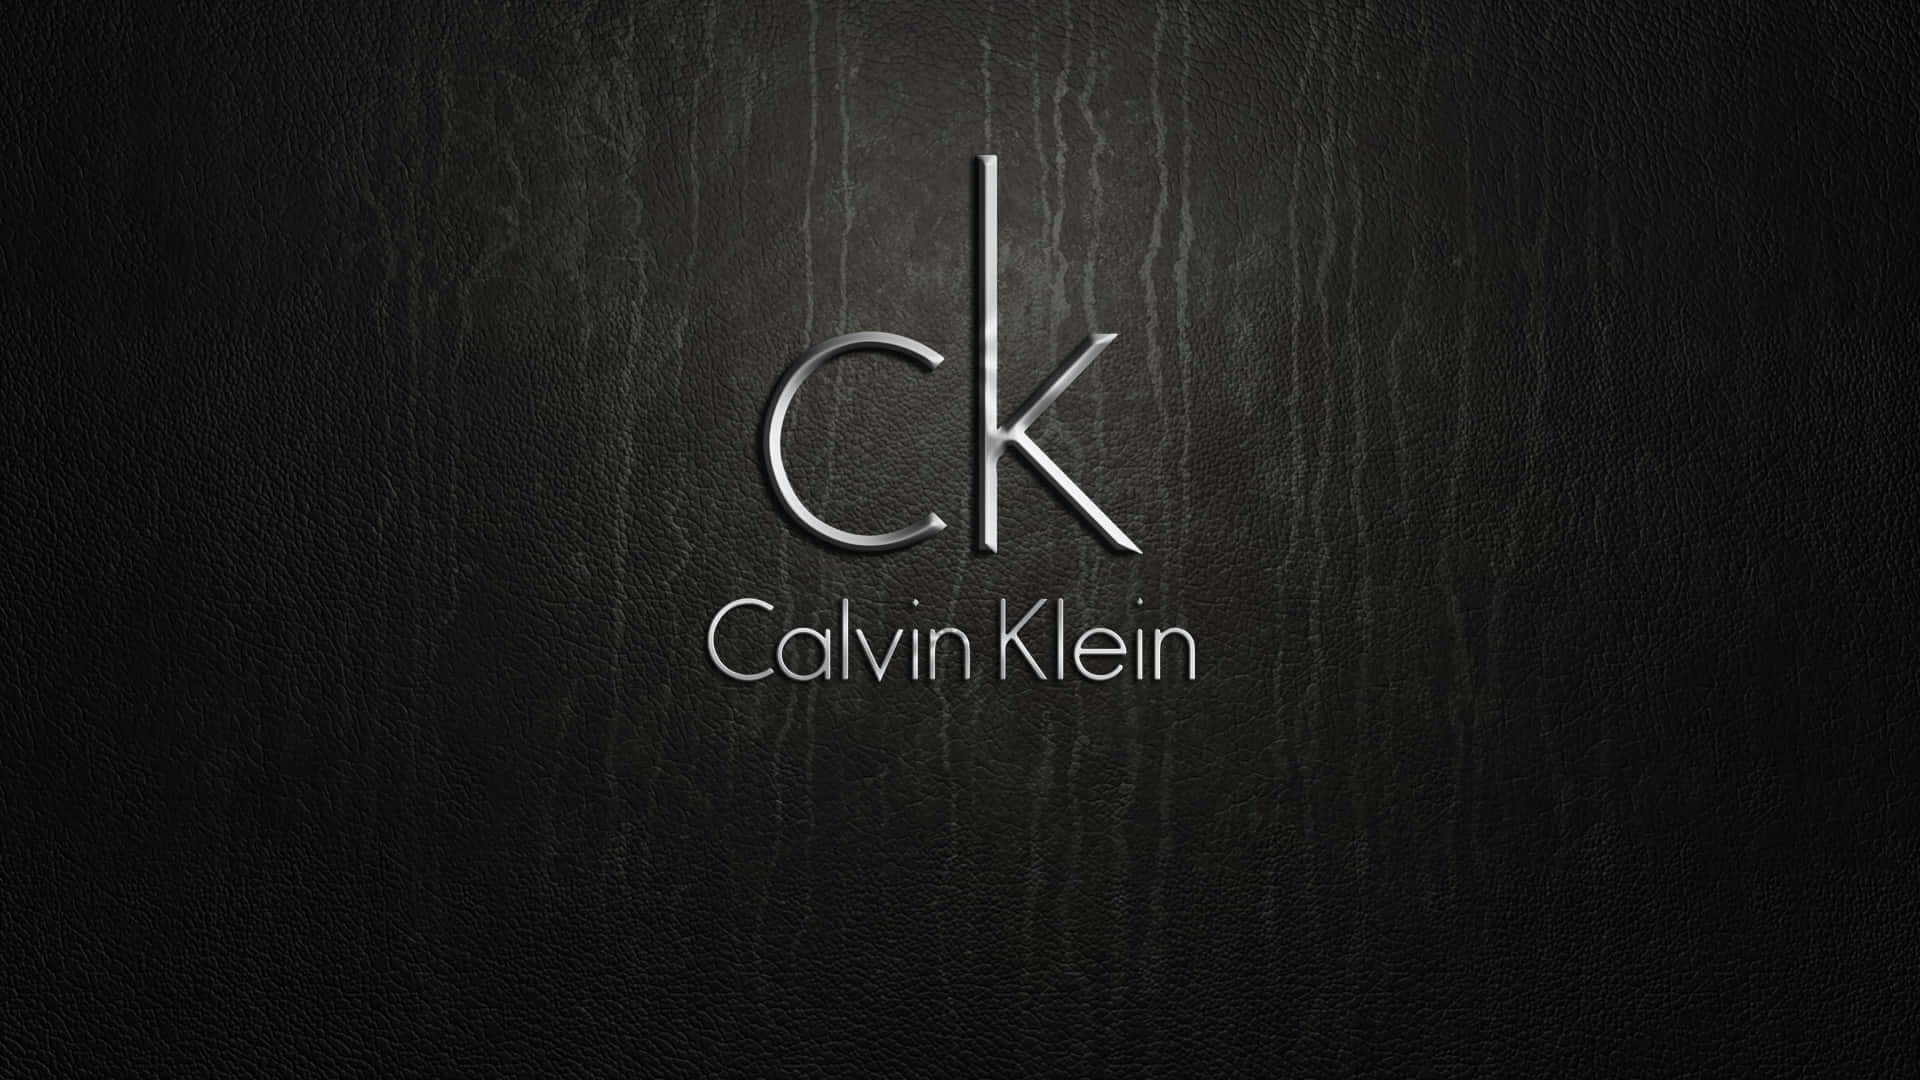 Calvin Klein Background Wallpaper